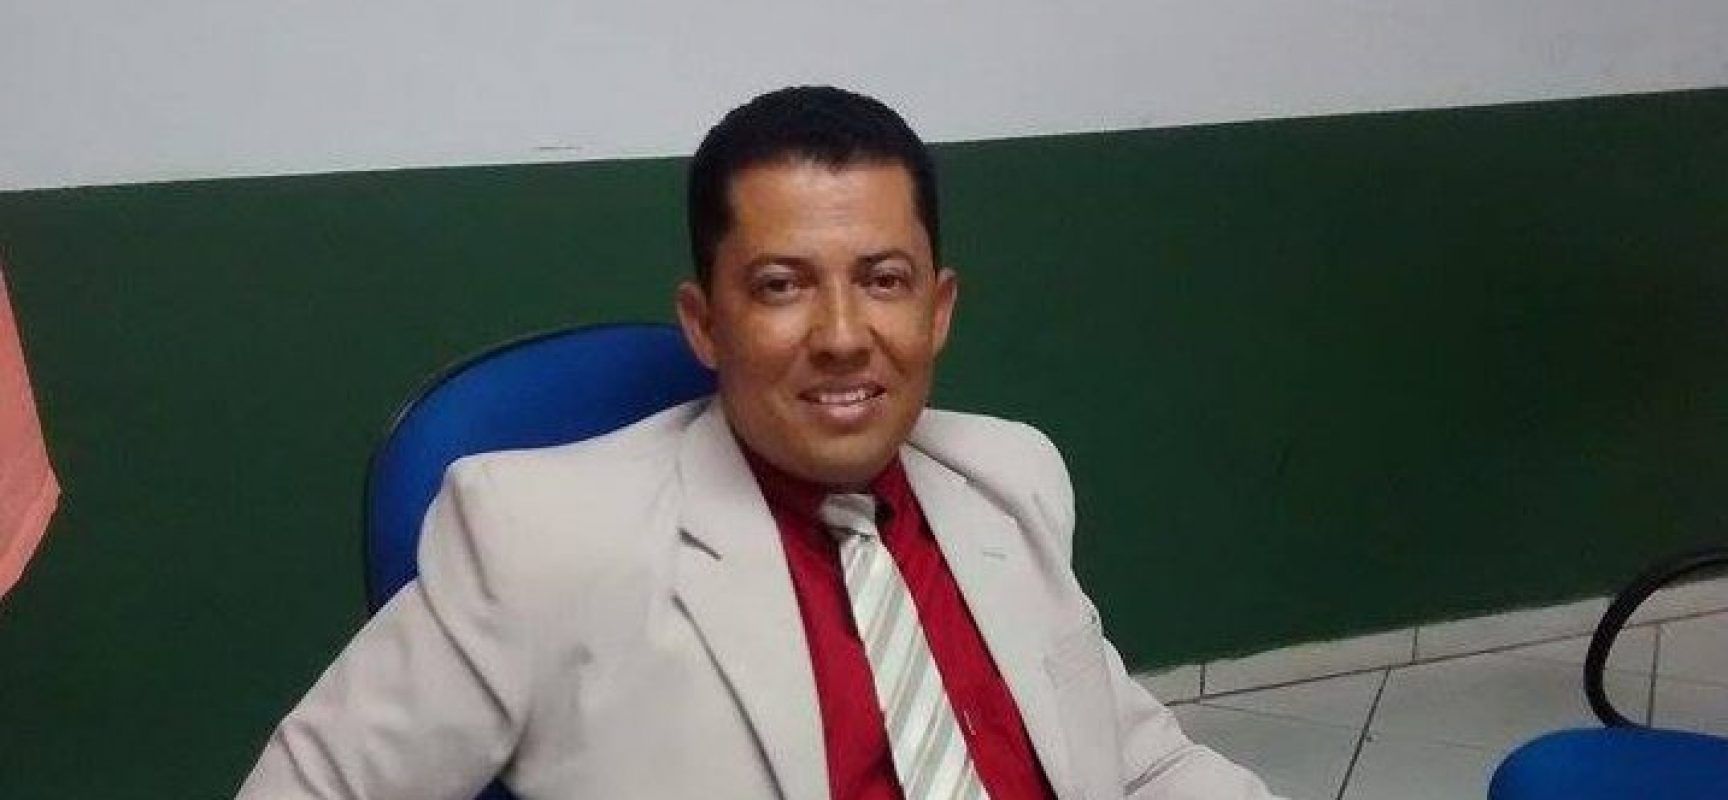 CONFIRMADO: Tarcísio Paixão é candidato a presidência da Câmara de Ilhéus em 2019